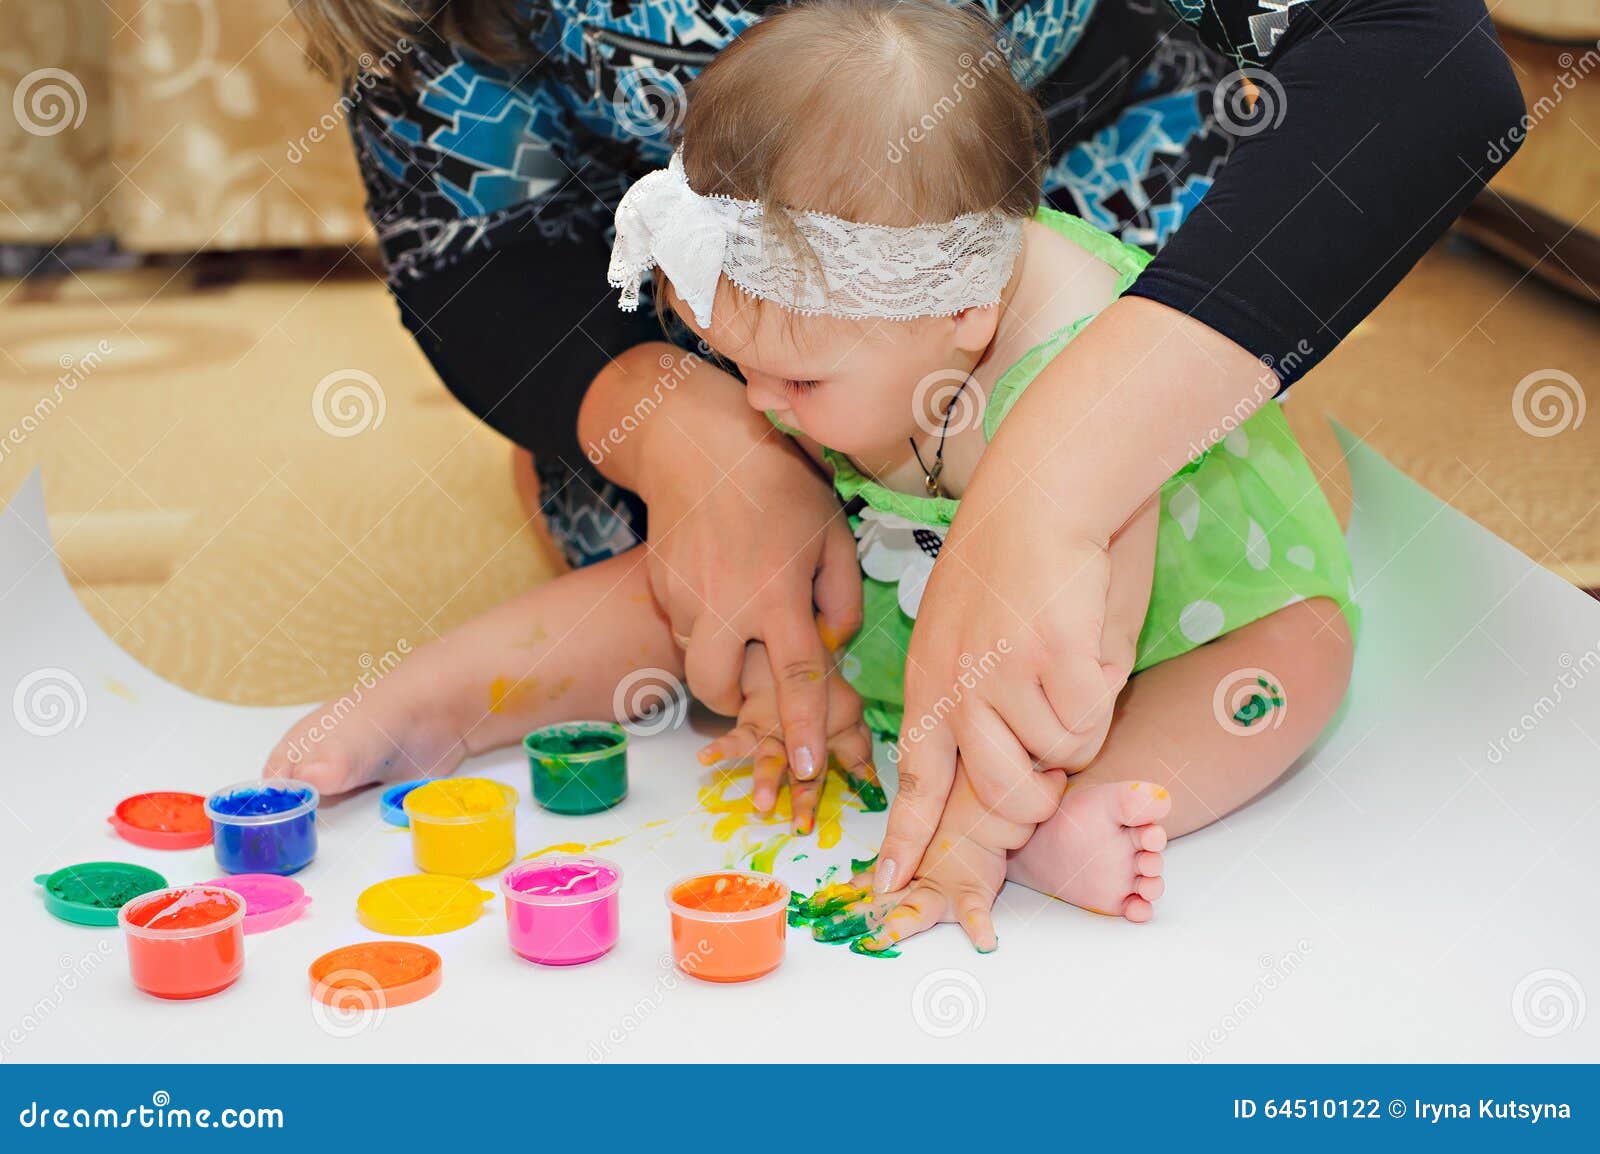 Petite Peinture De Bebe Par Ses Mains A Une Maison Avec La Mere Photo Stock Image Du Joie Retrait